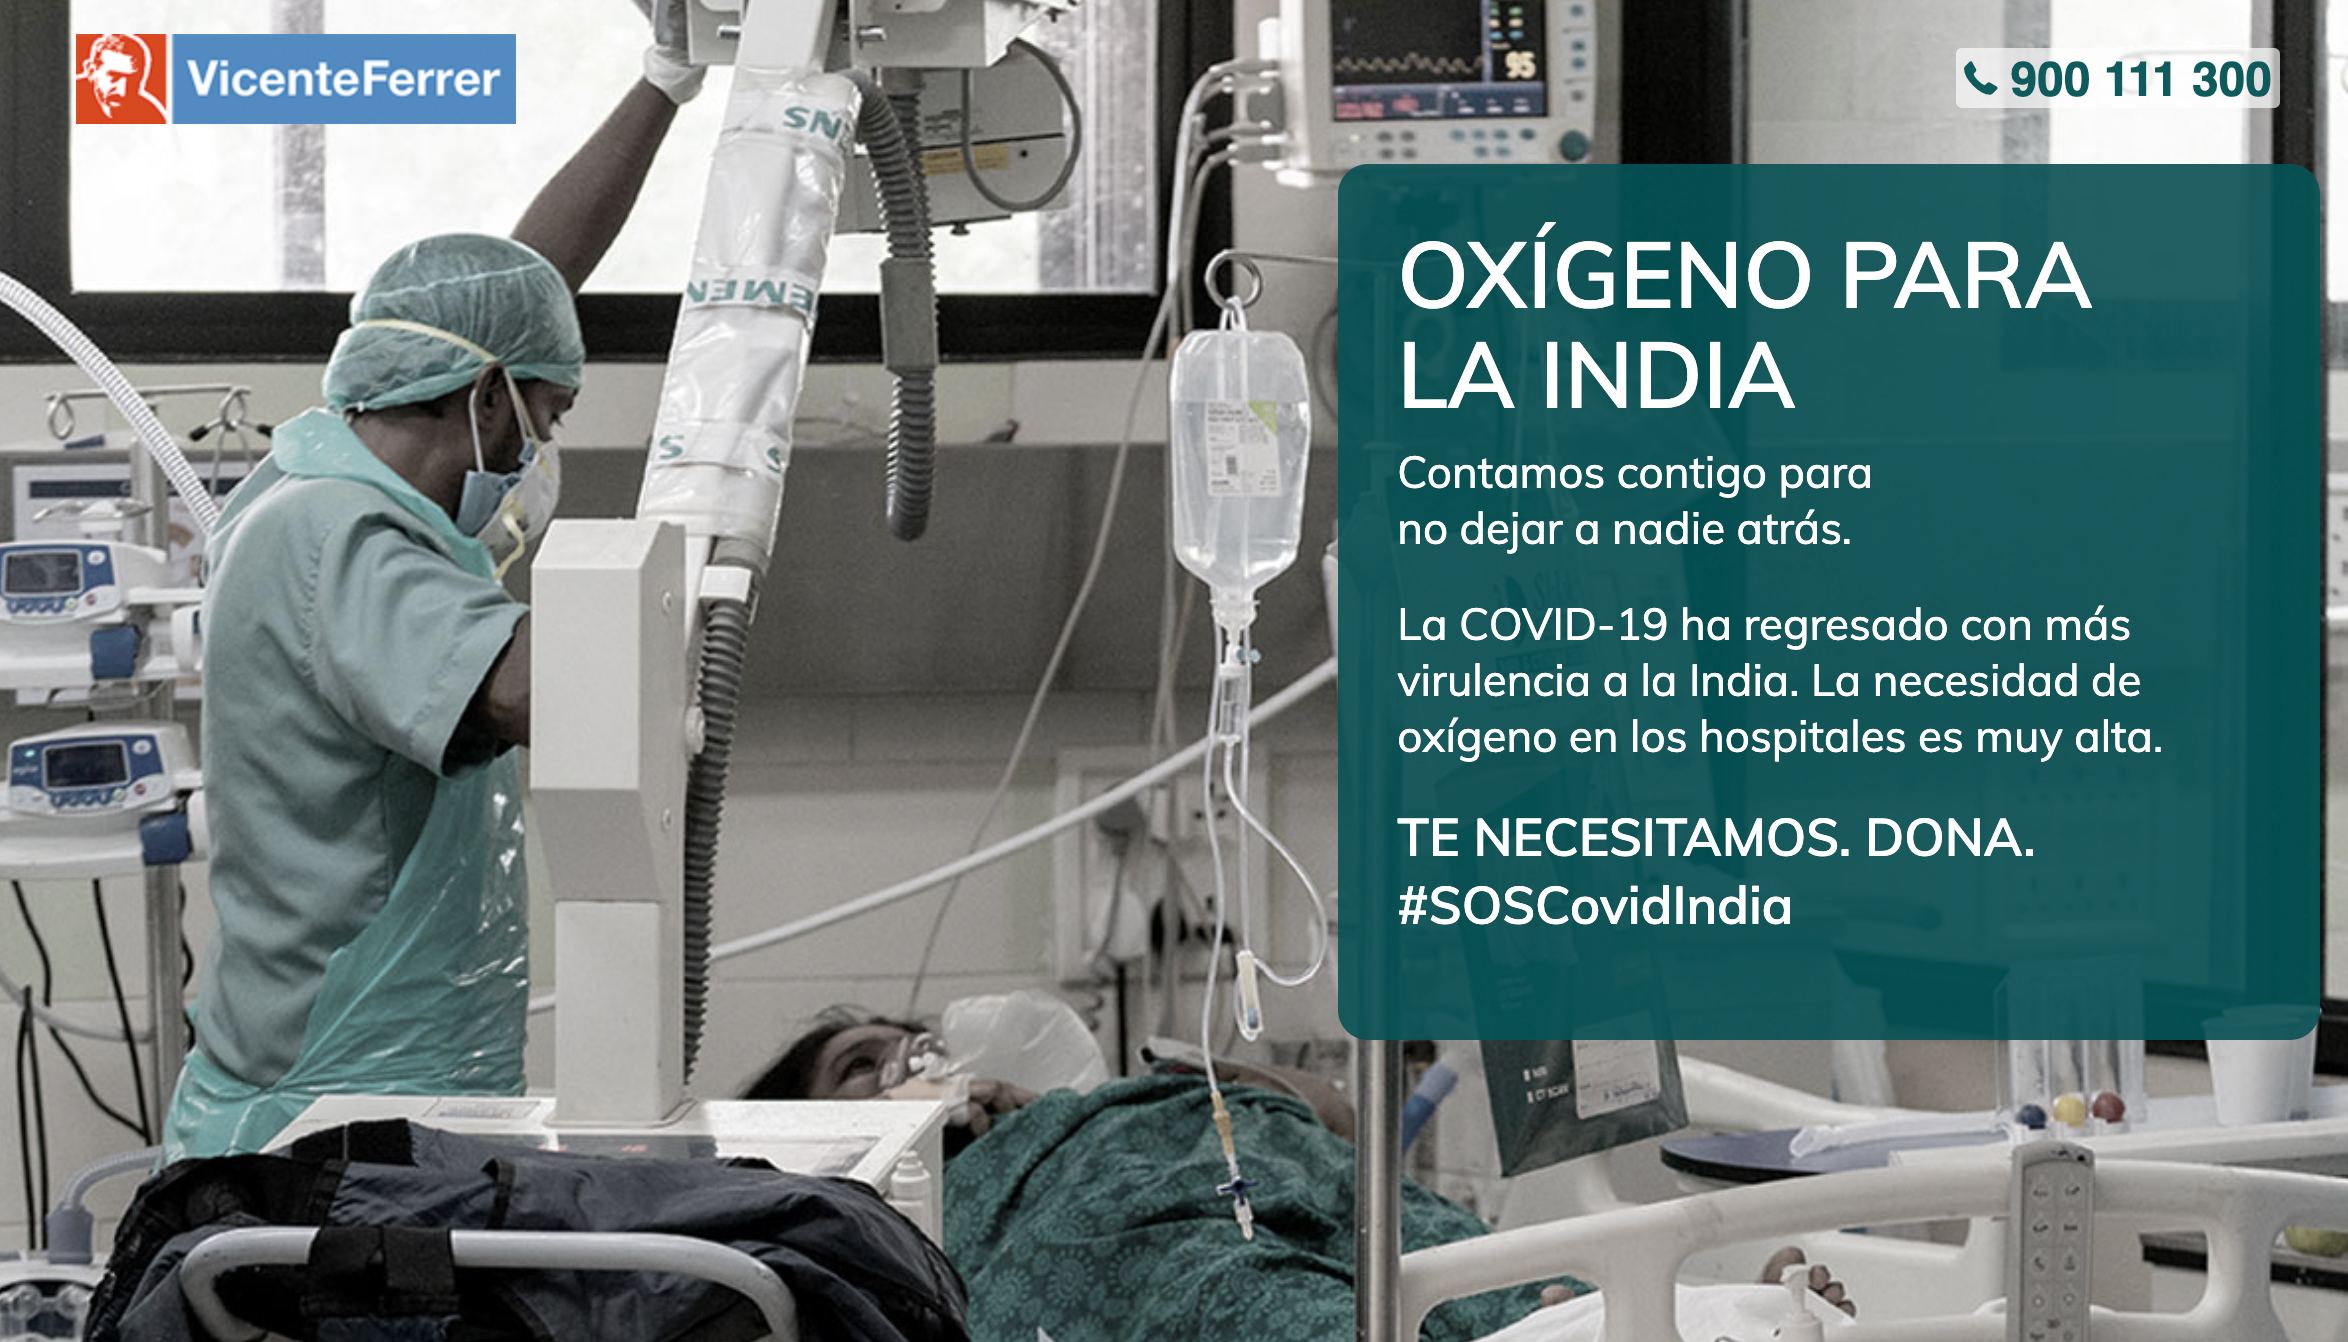 SIAM werkt samen met Vicente Ferrer Foundation in "Oxygen for India"-campagne